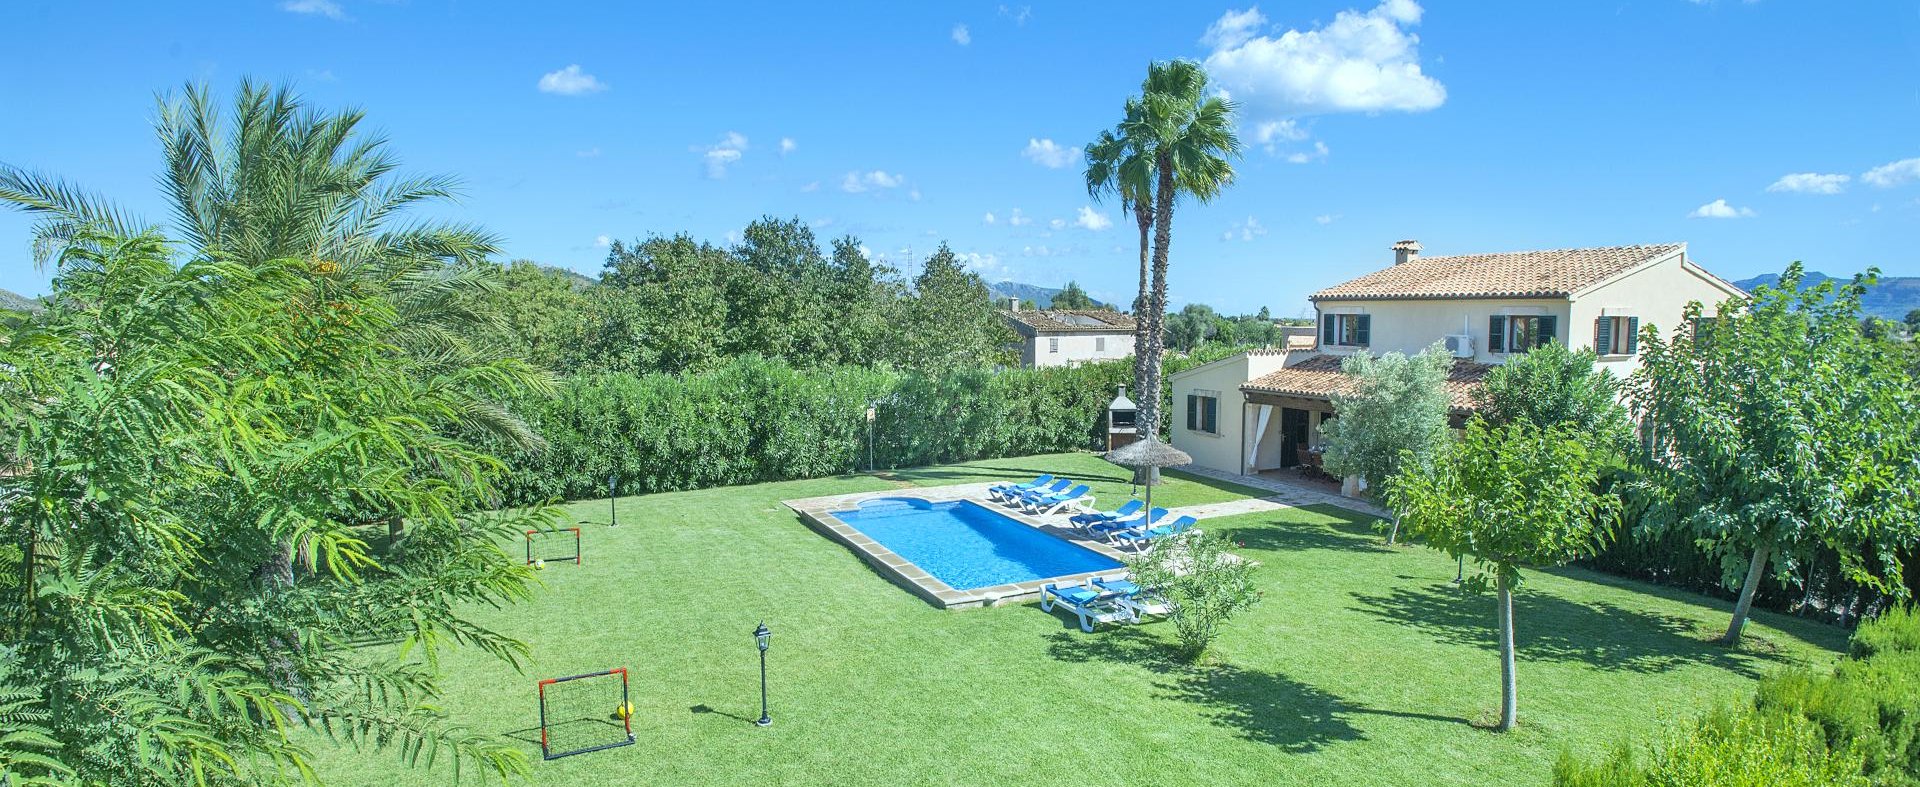 Ferienhaus Mallorca mit Pool für 8 Personen mit schönem Garten.